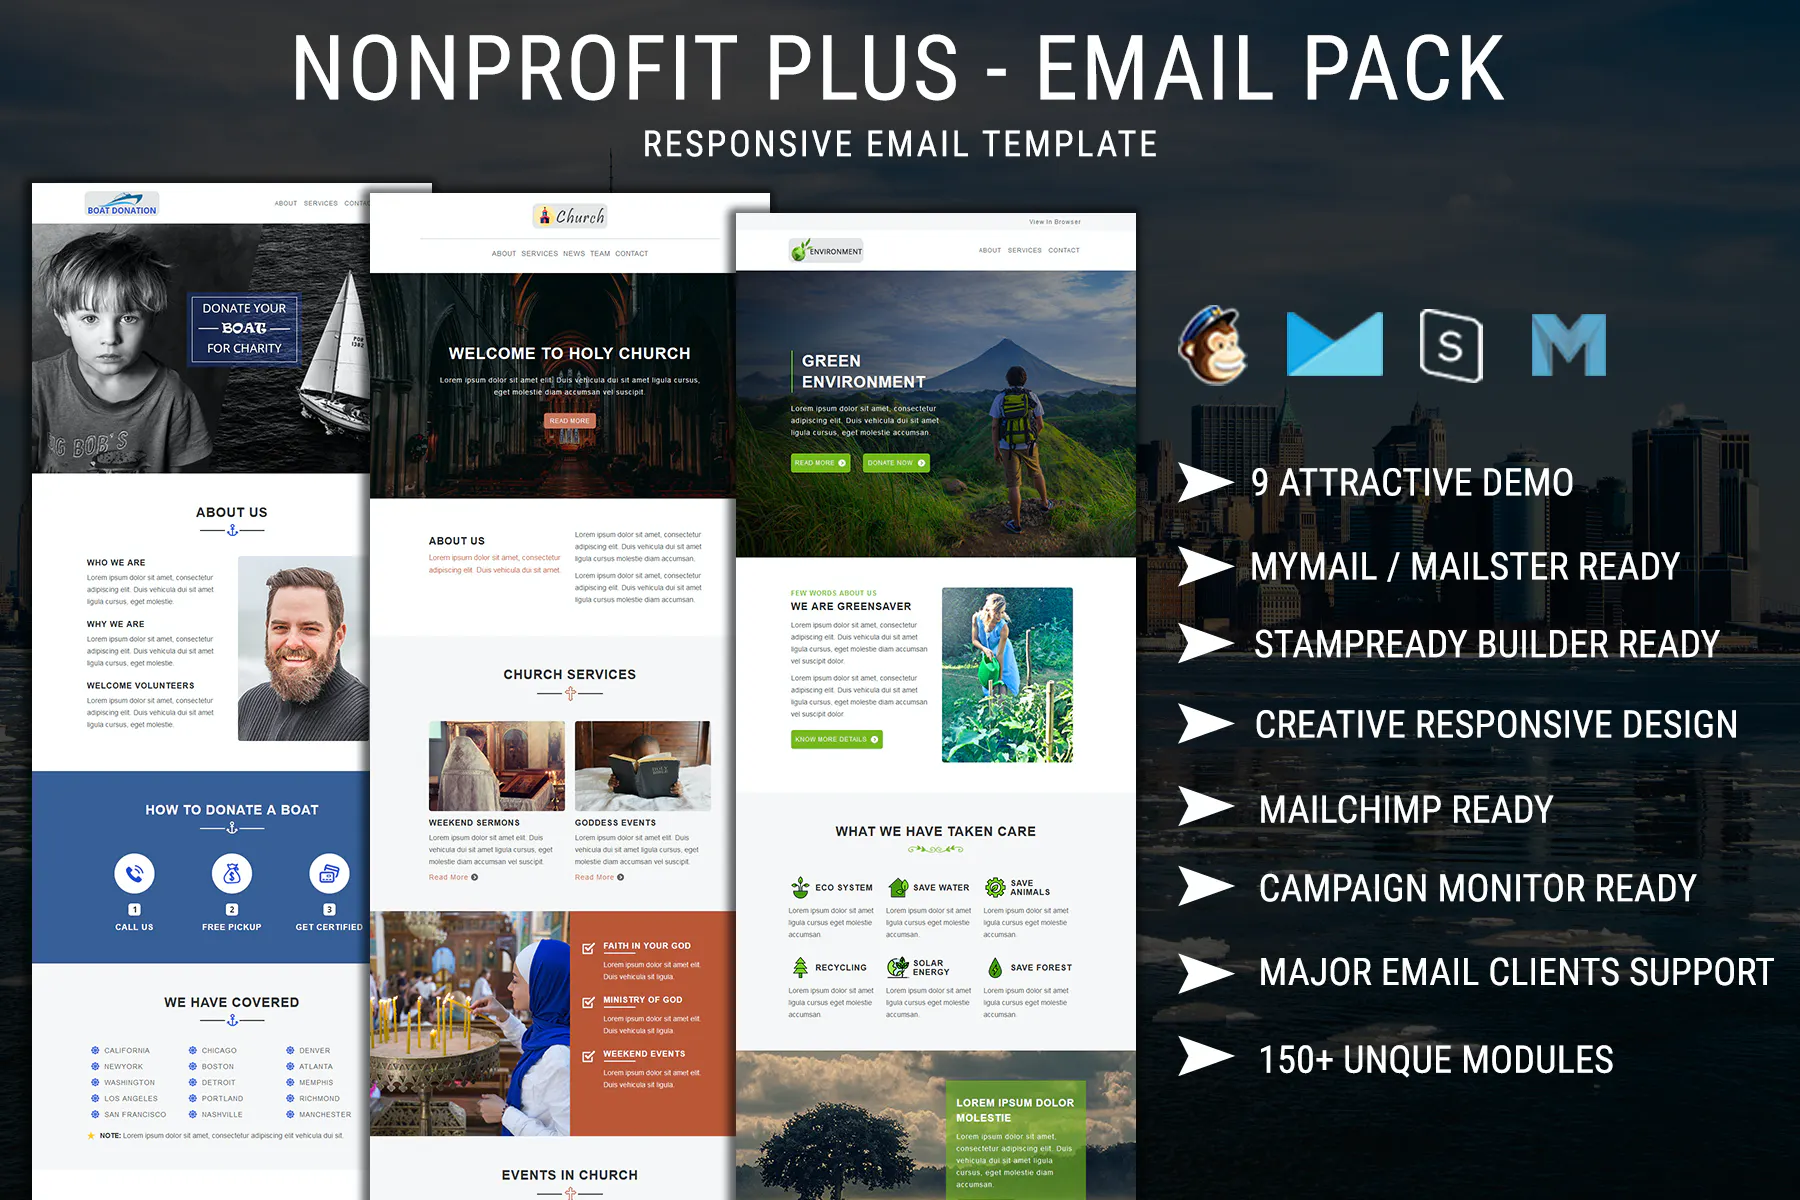 Nonprofit Plus - Email Pack